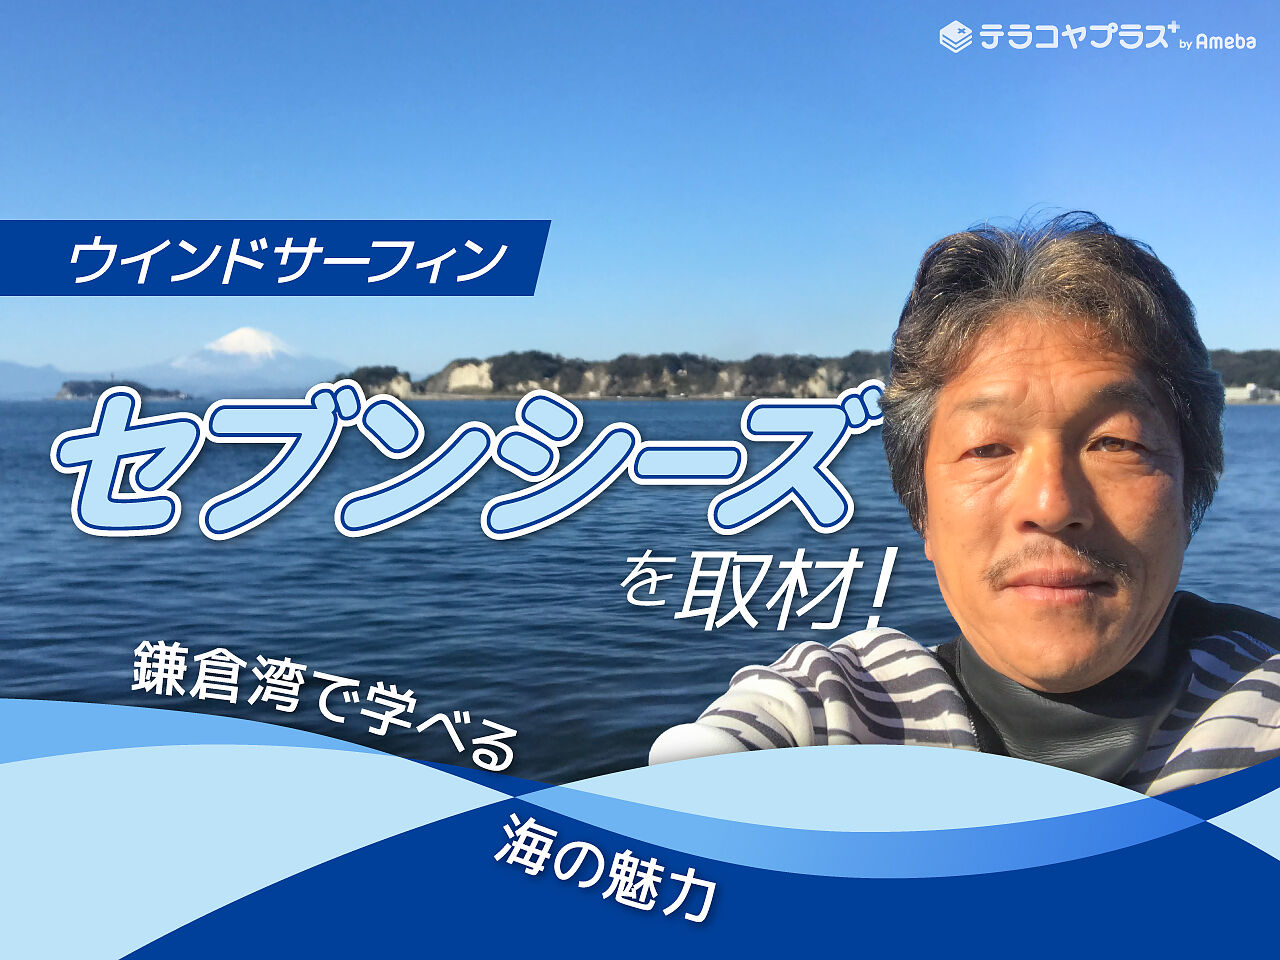 ウインドサーフィン体験ができる「セブンシーズ」を取材！鎌倉湾で学べる海の魅力に迫るの画像